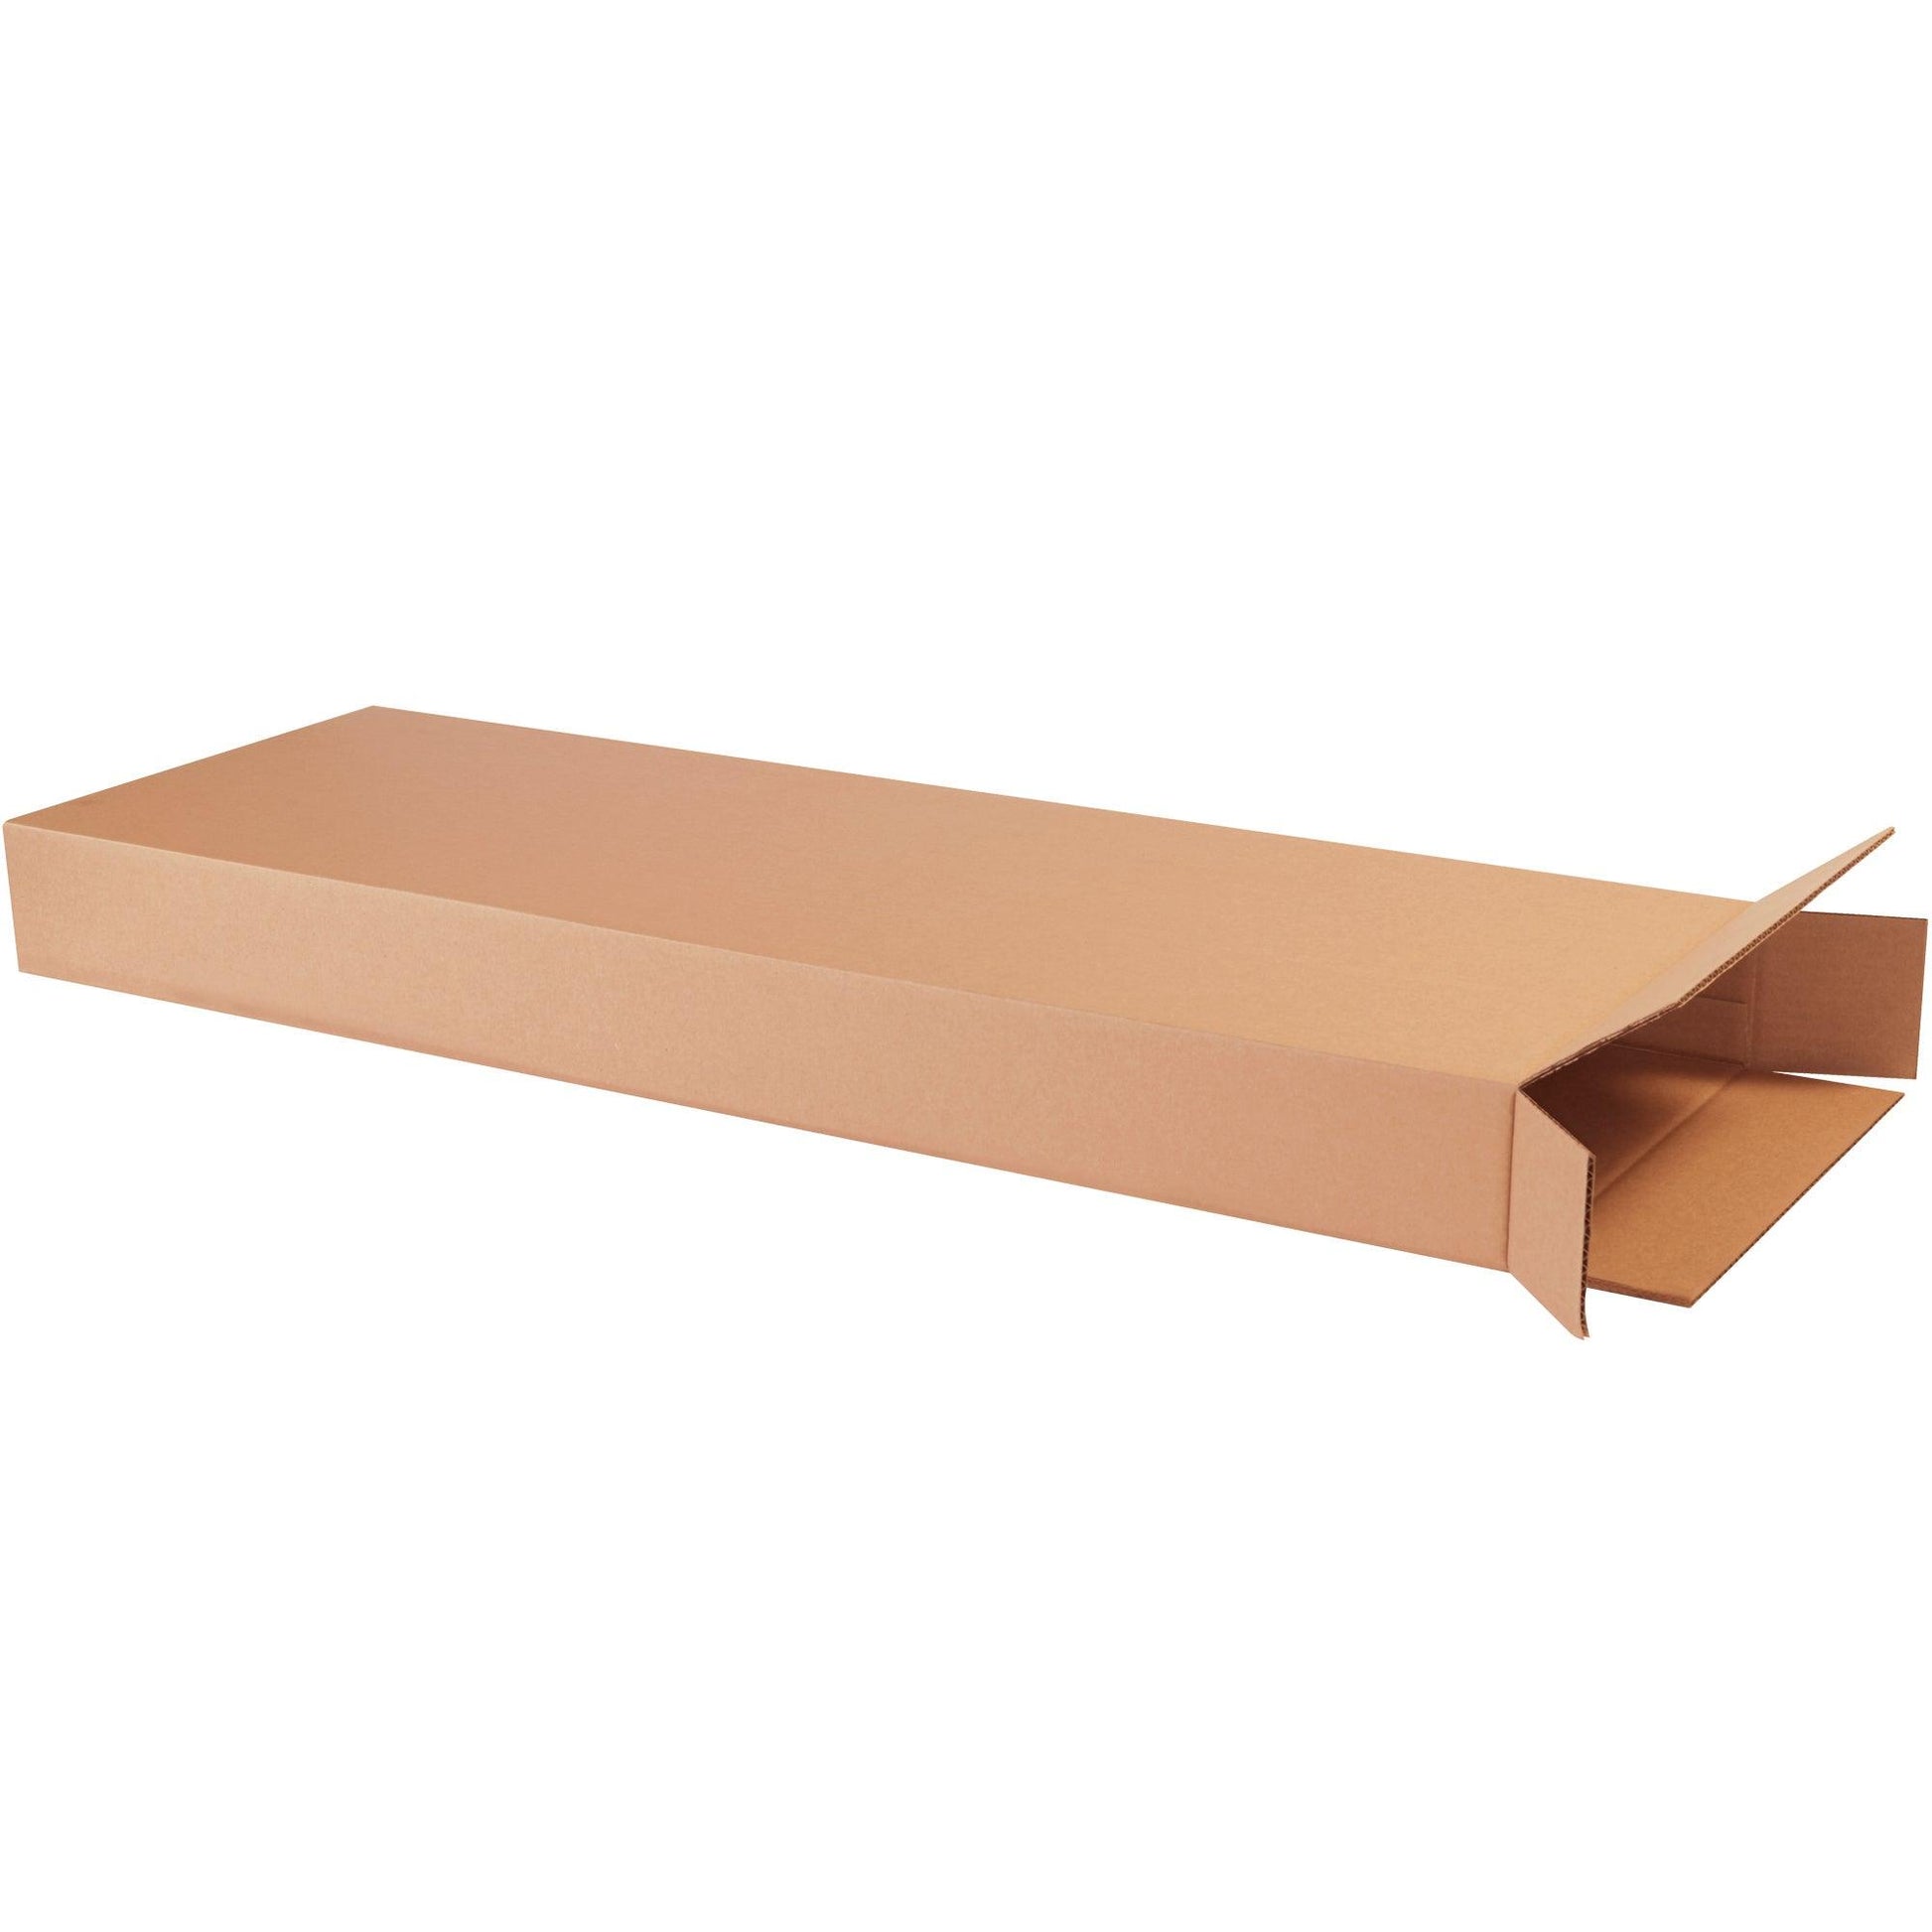 14 x 4 x 42" Side Loading Boxes - 14442FOL